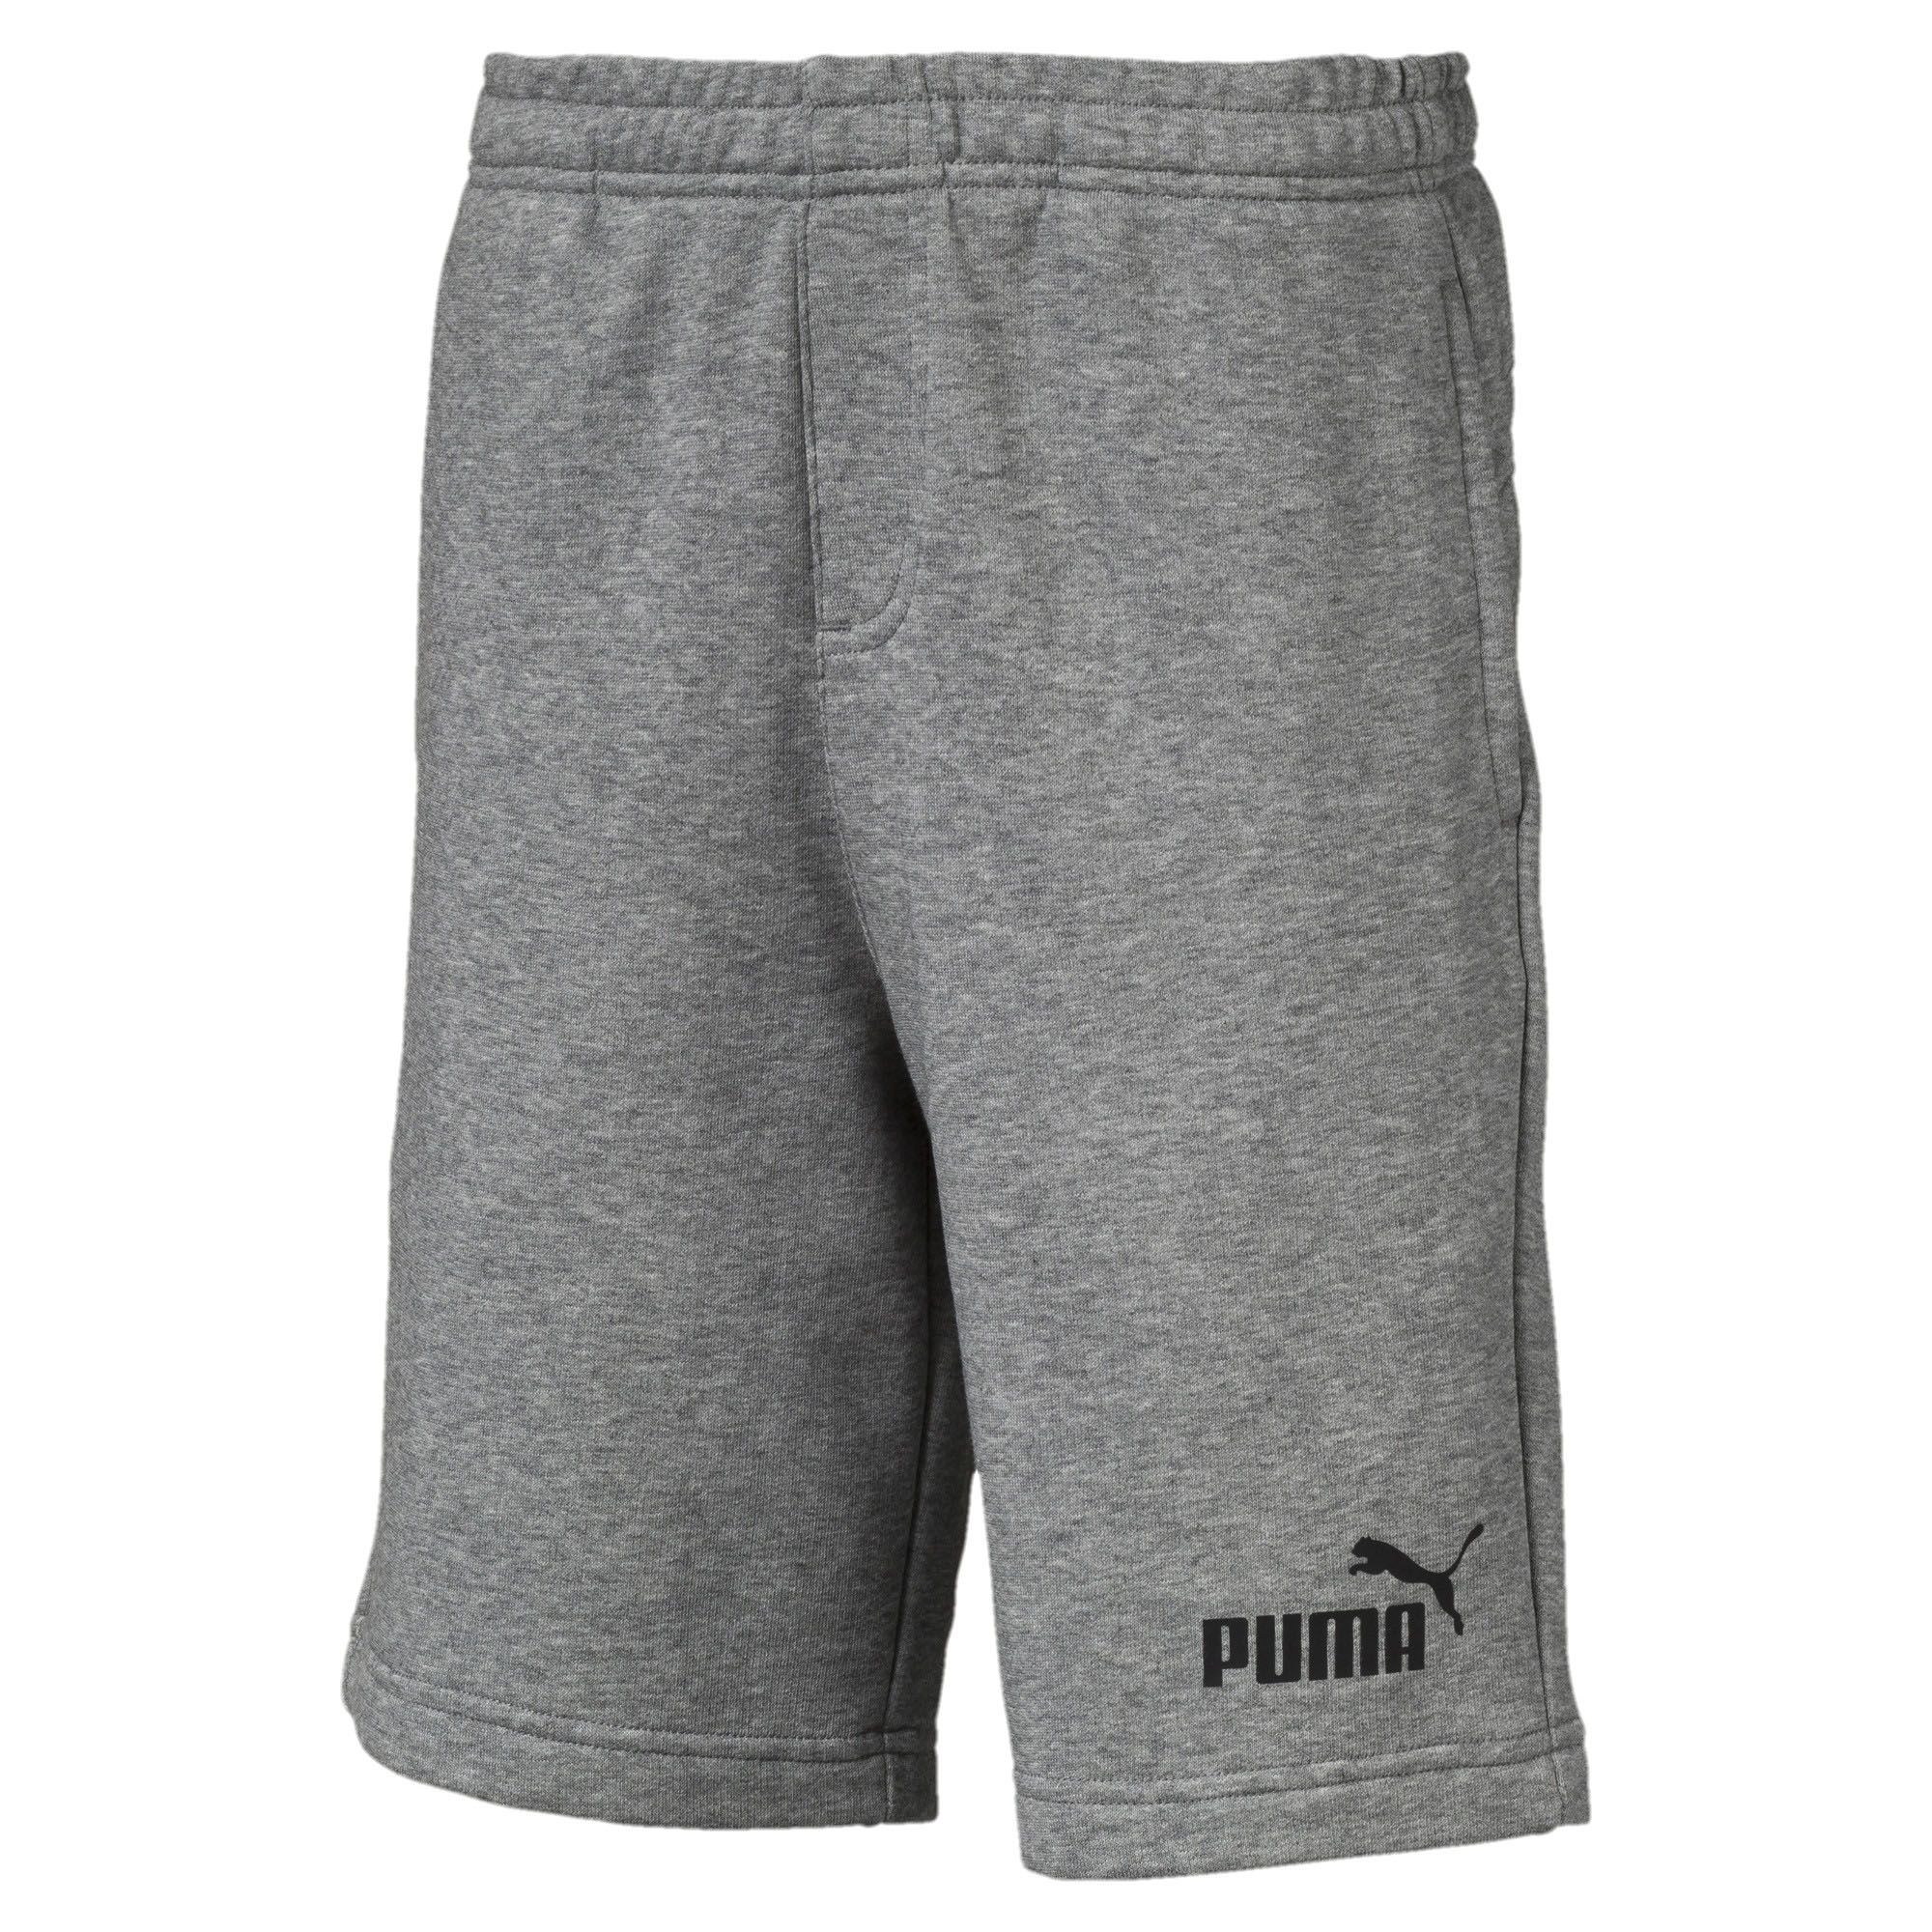 Puma Essentials Kids Sweat Short Grey - 7-8 Years